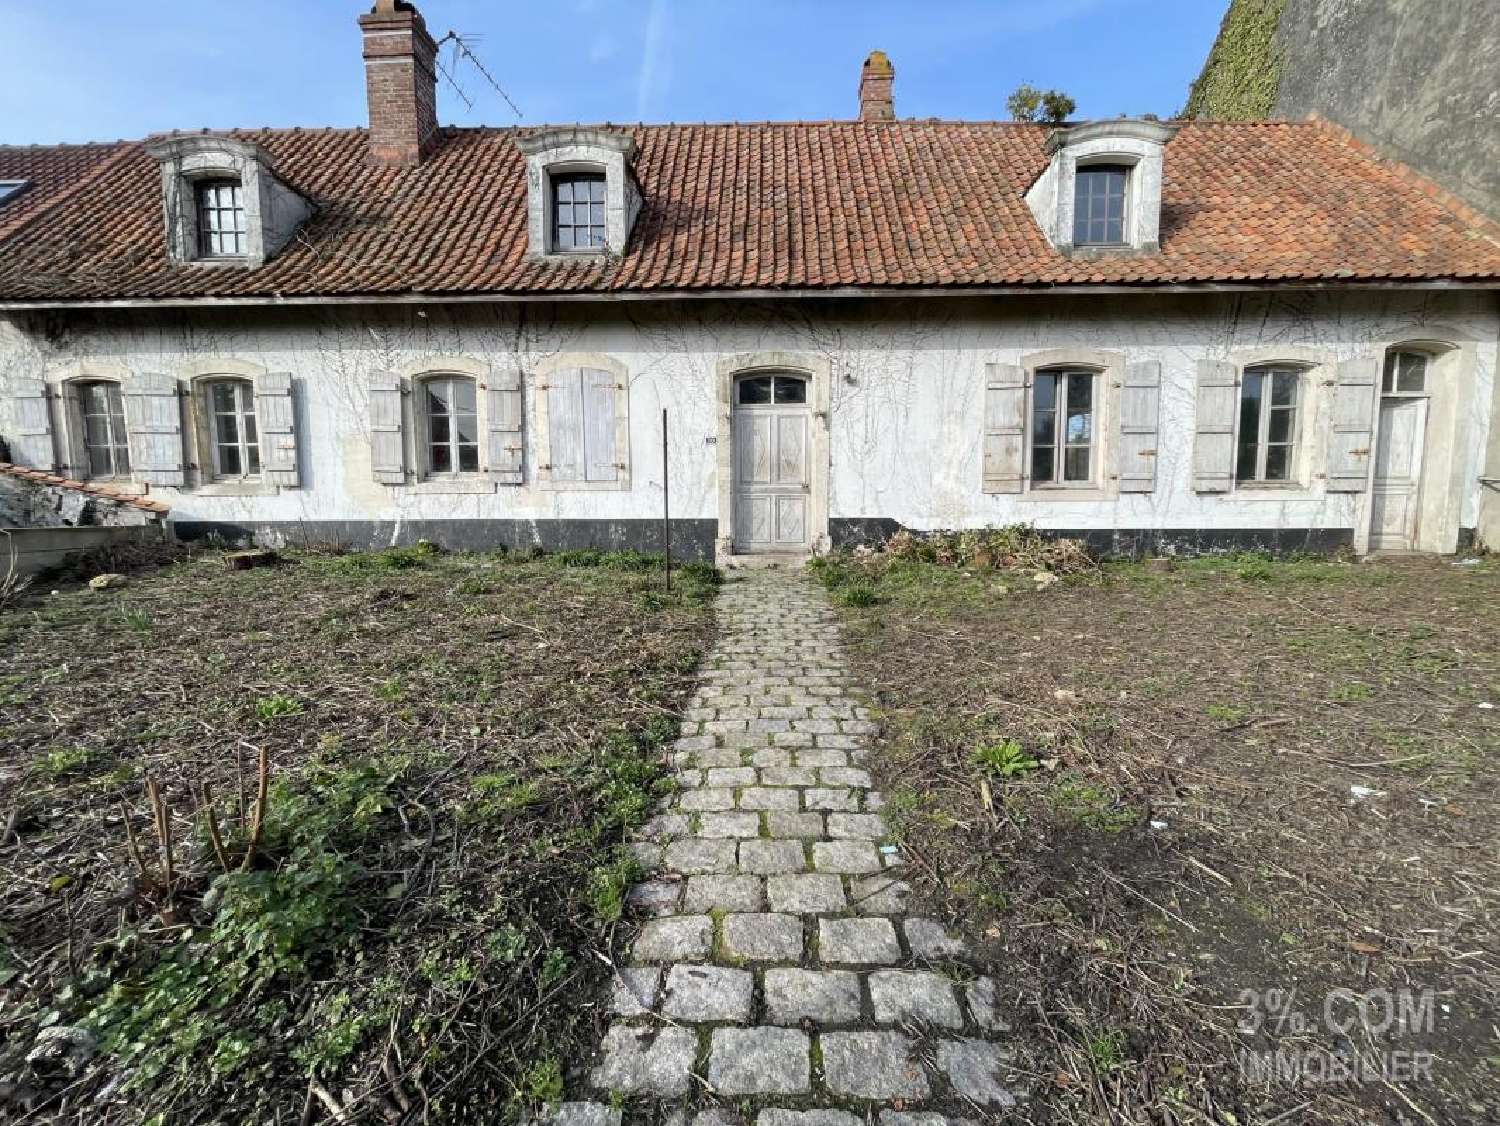  for sale house Condette Pas-de-Calais 1